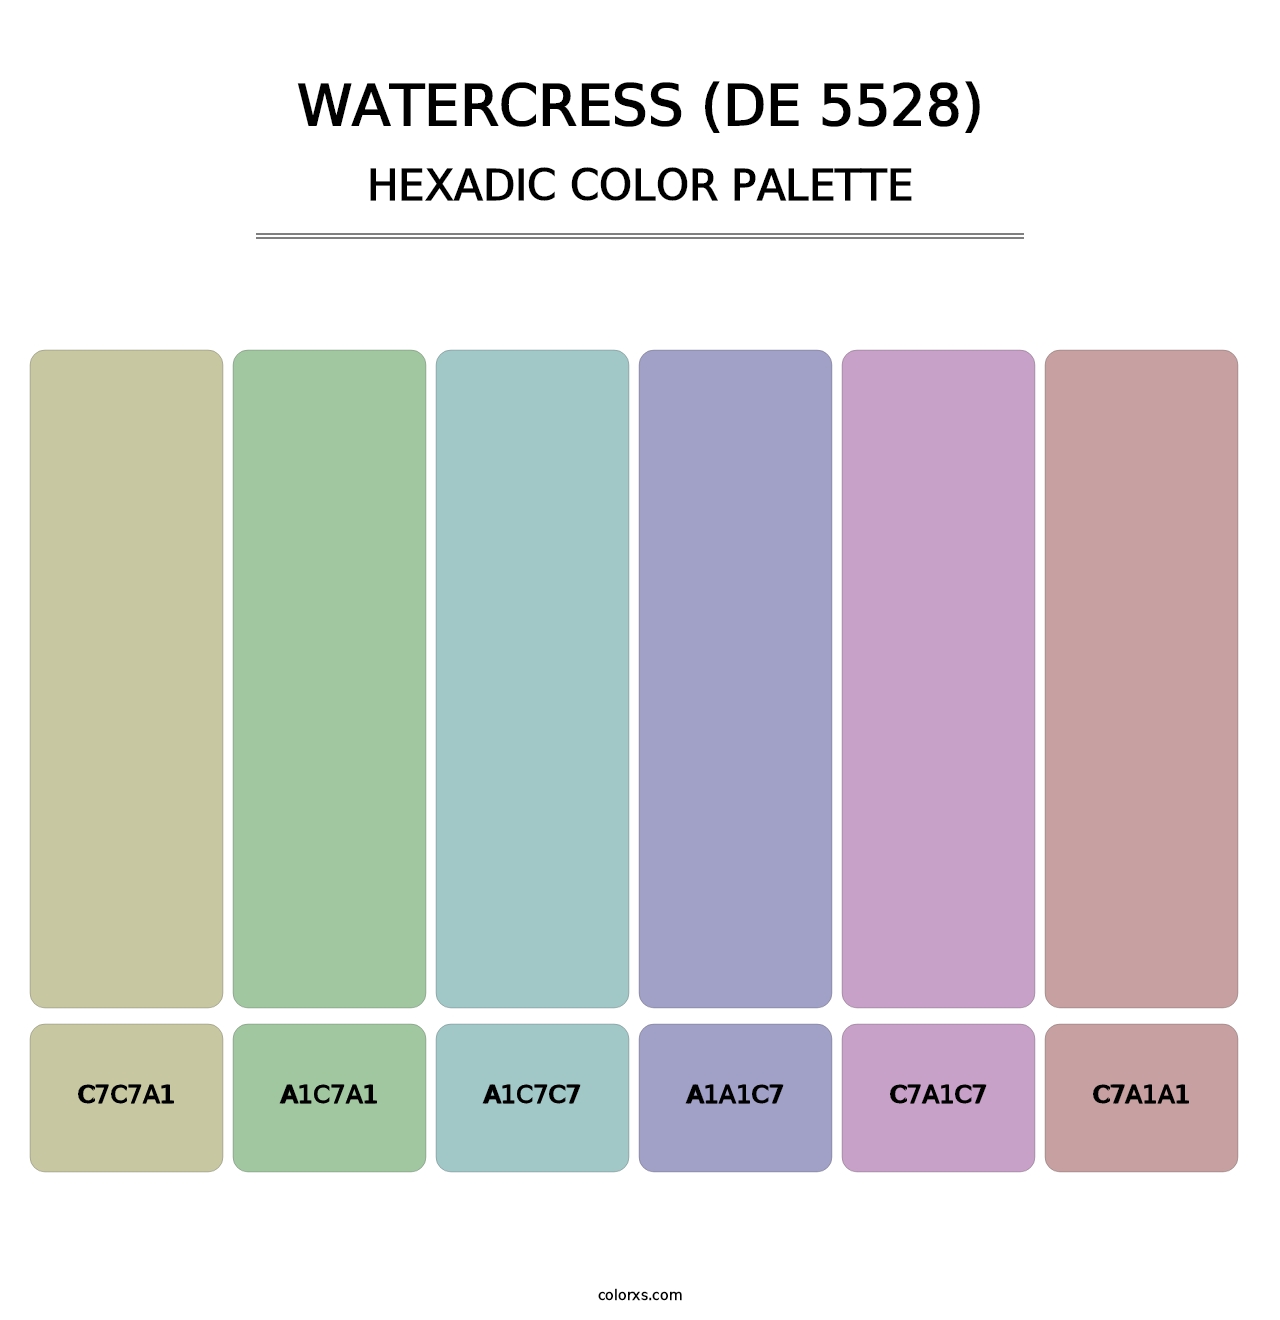 Watercress (DE 5528) - Hexadic Color Palette